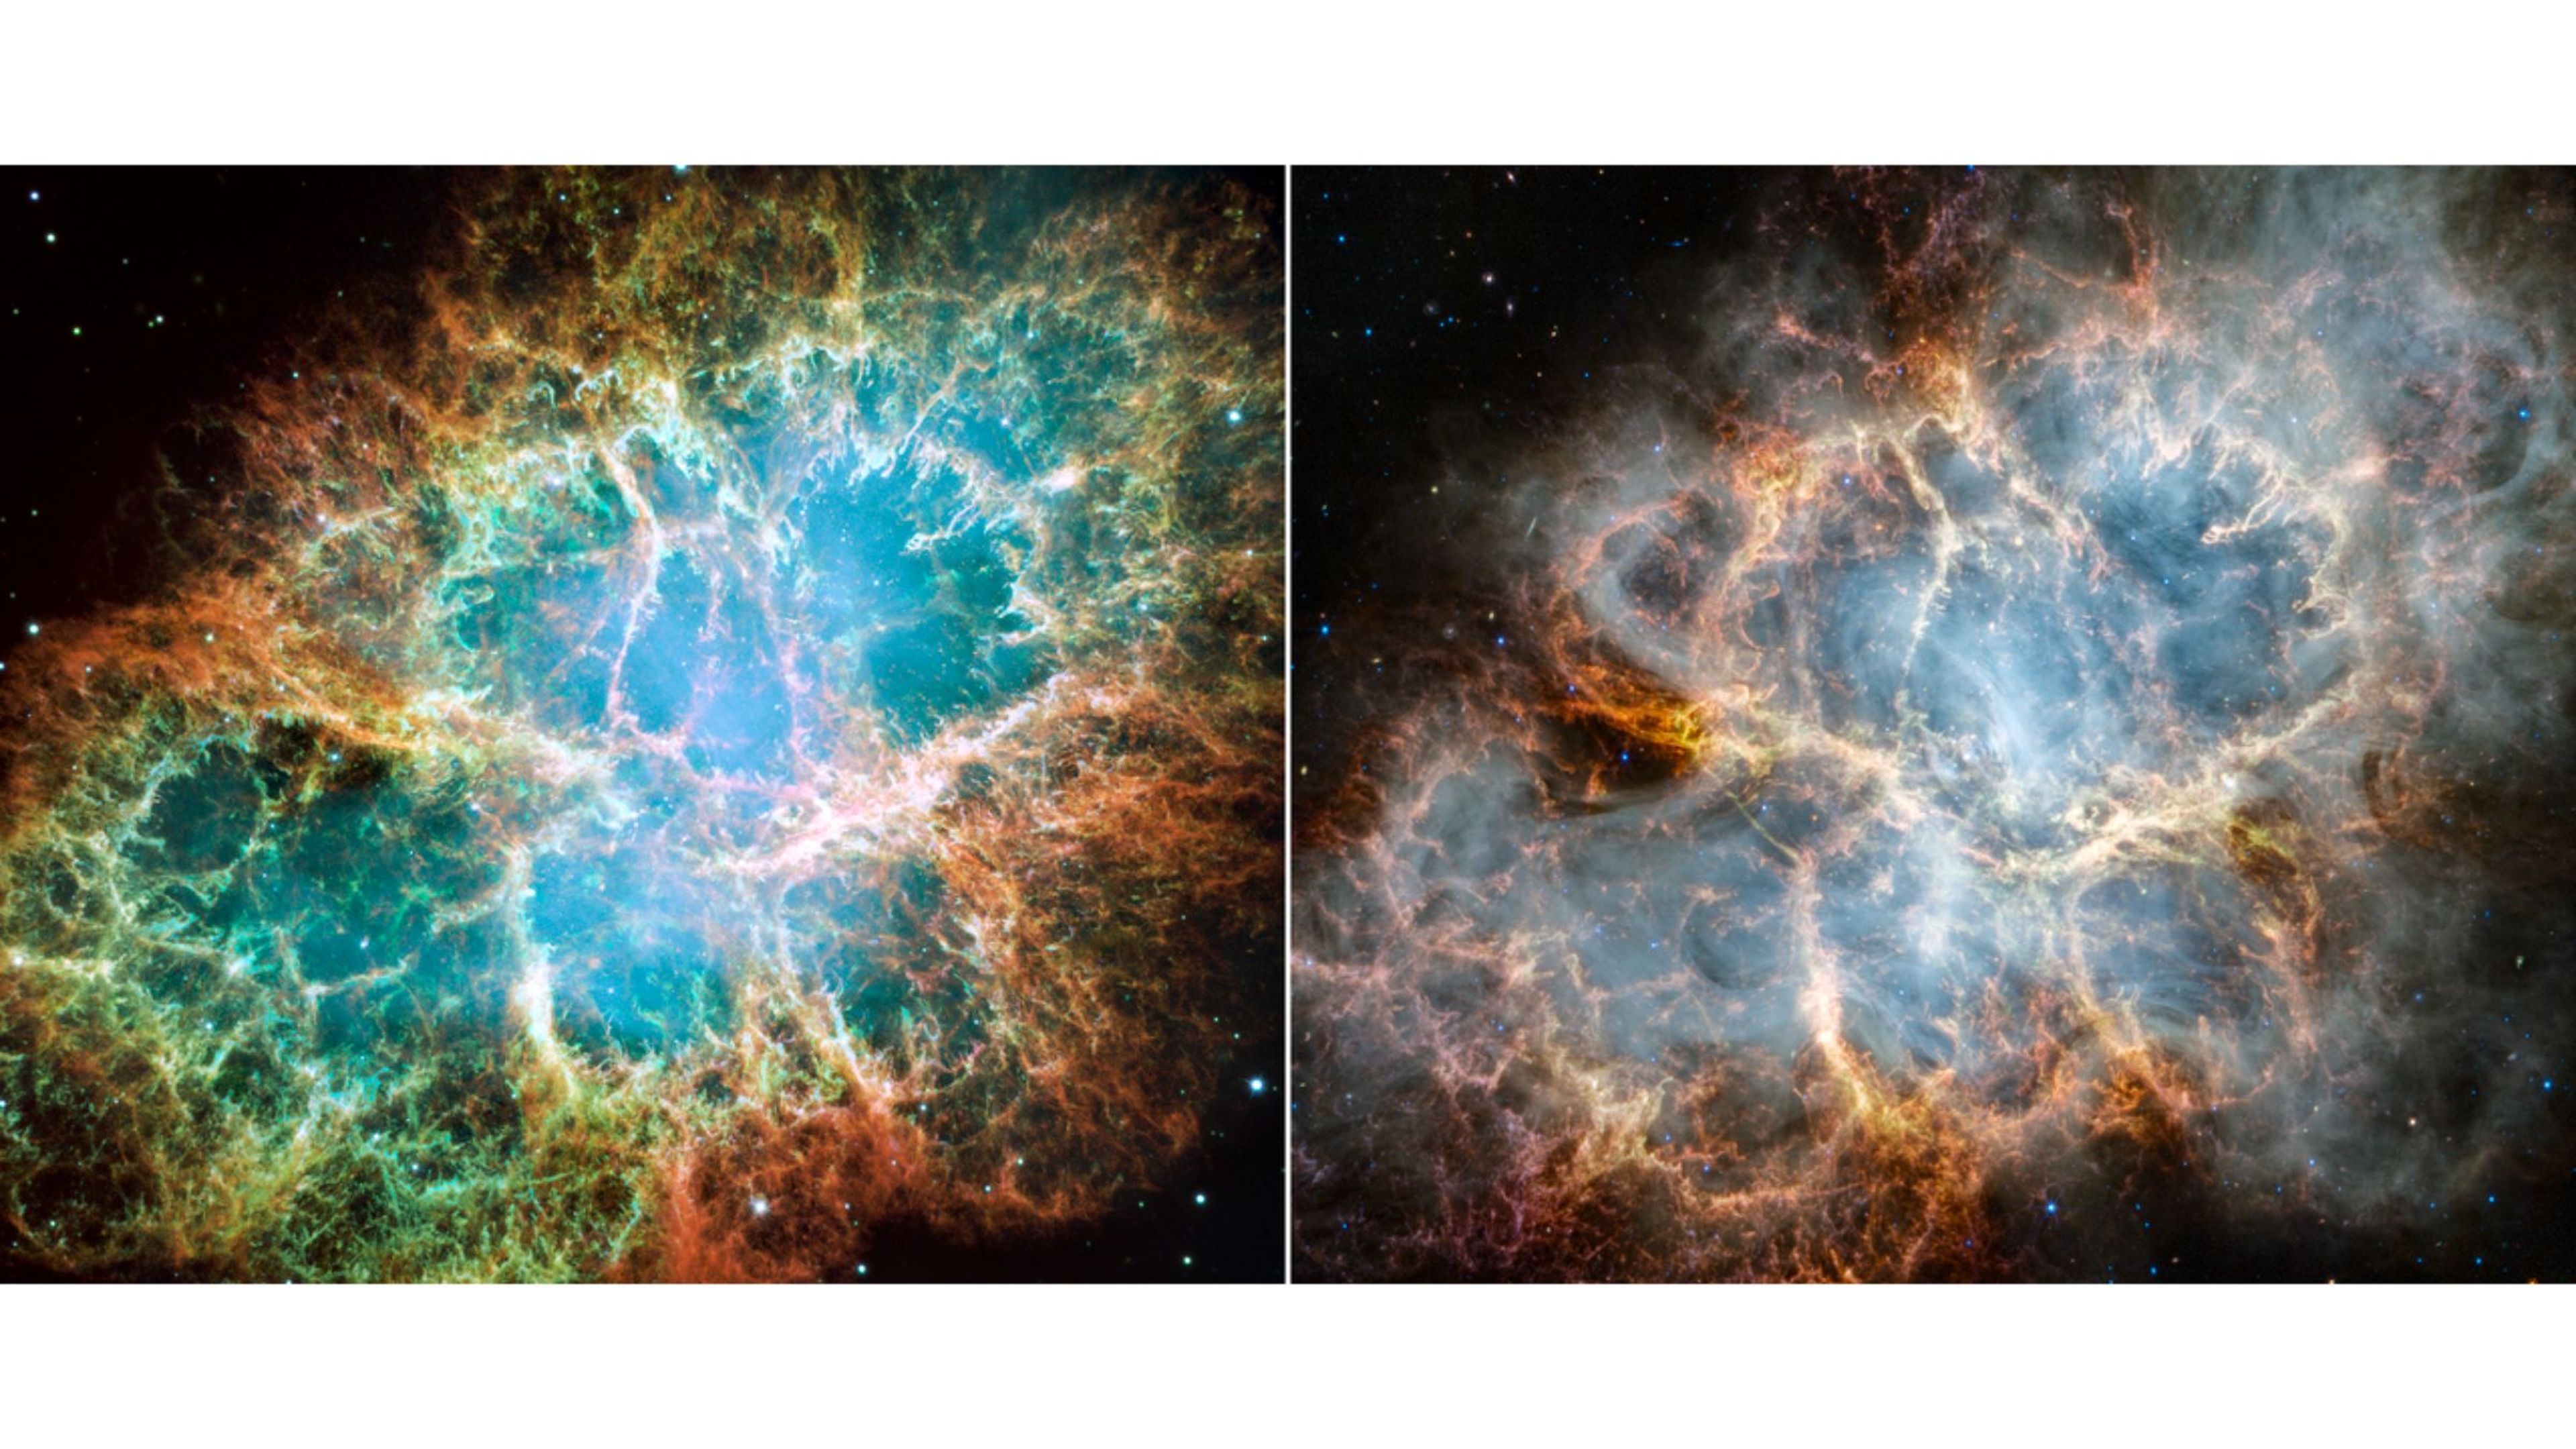 Webb y Hubble fotos comparadas de la Nebulosa del Cangrejo. Fuente: NASA